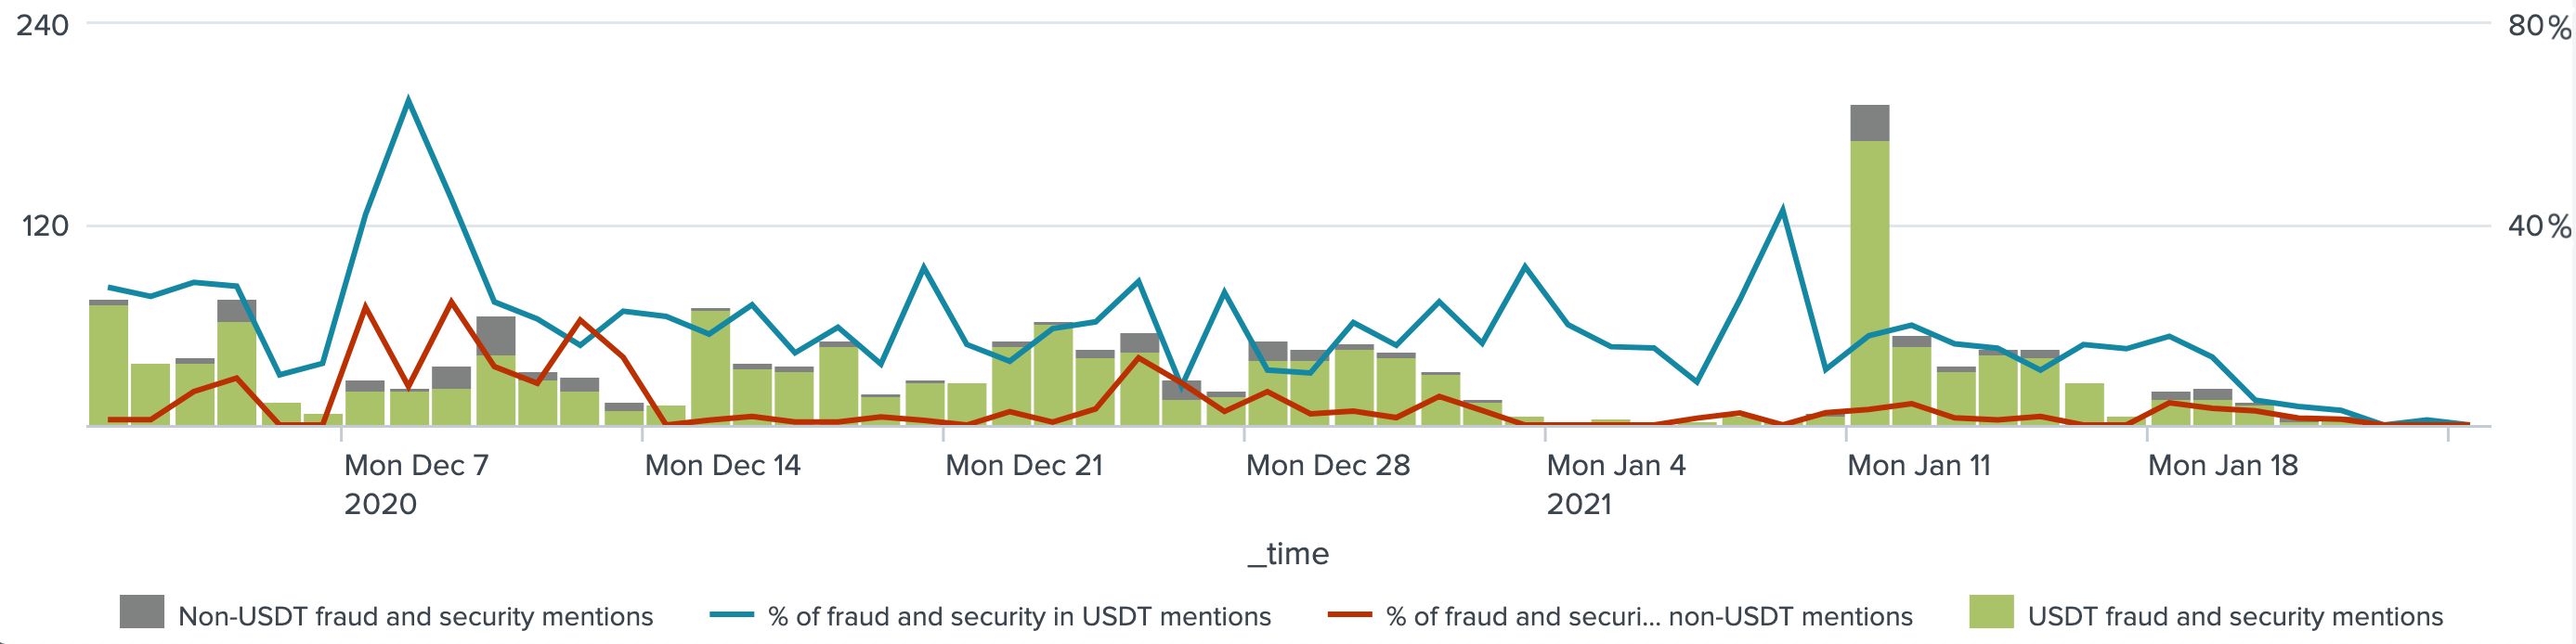 افزایش موضوعات امنیتی در معاملات USDT در مقایسه با صرافی های تجاری که معاملات USDT را ارائه نمی دهند